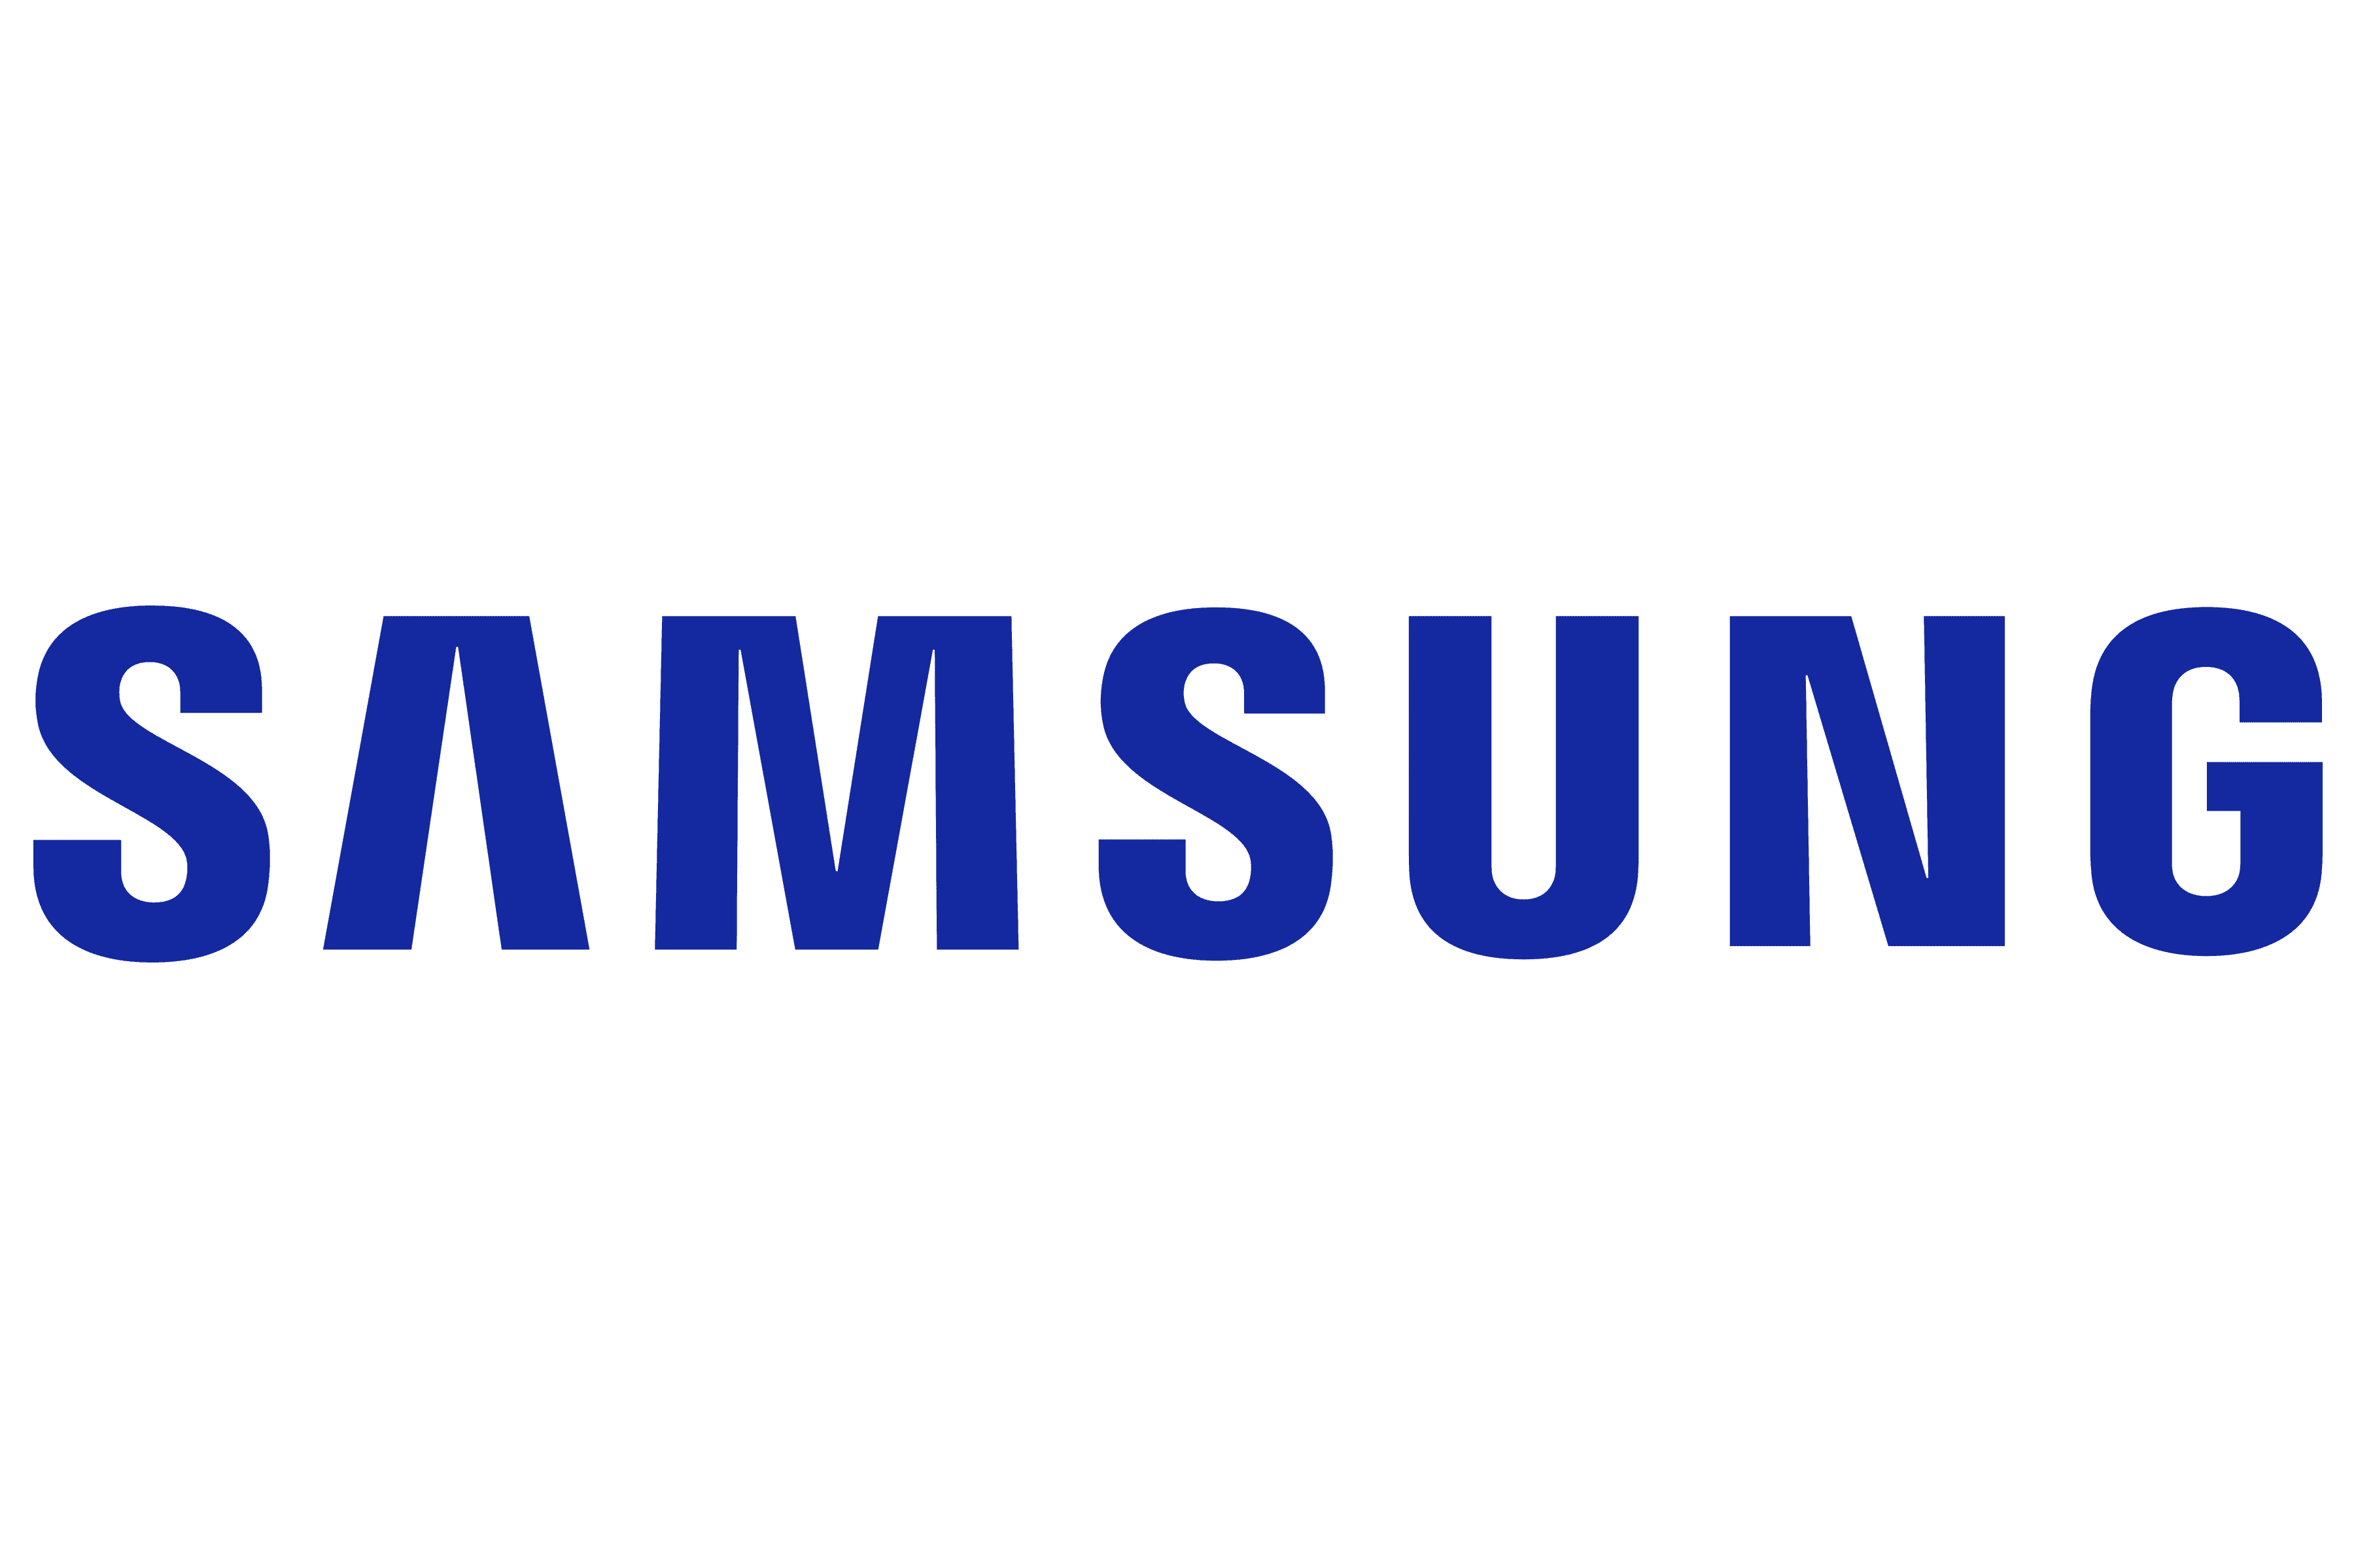 Samsung lisää Ledger tuen Galaxy-laitteille